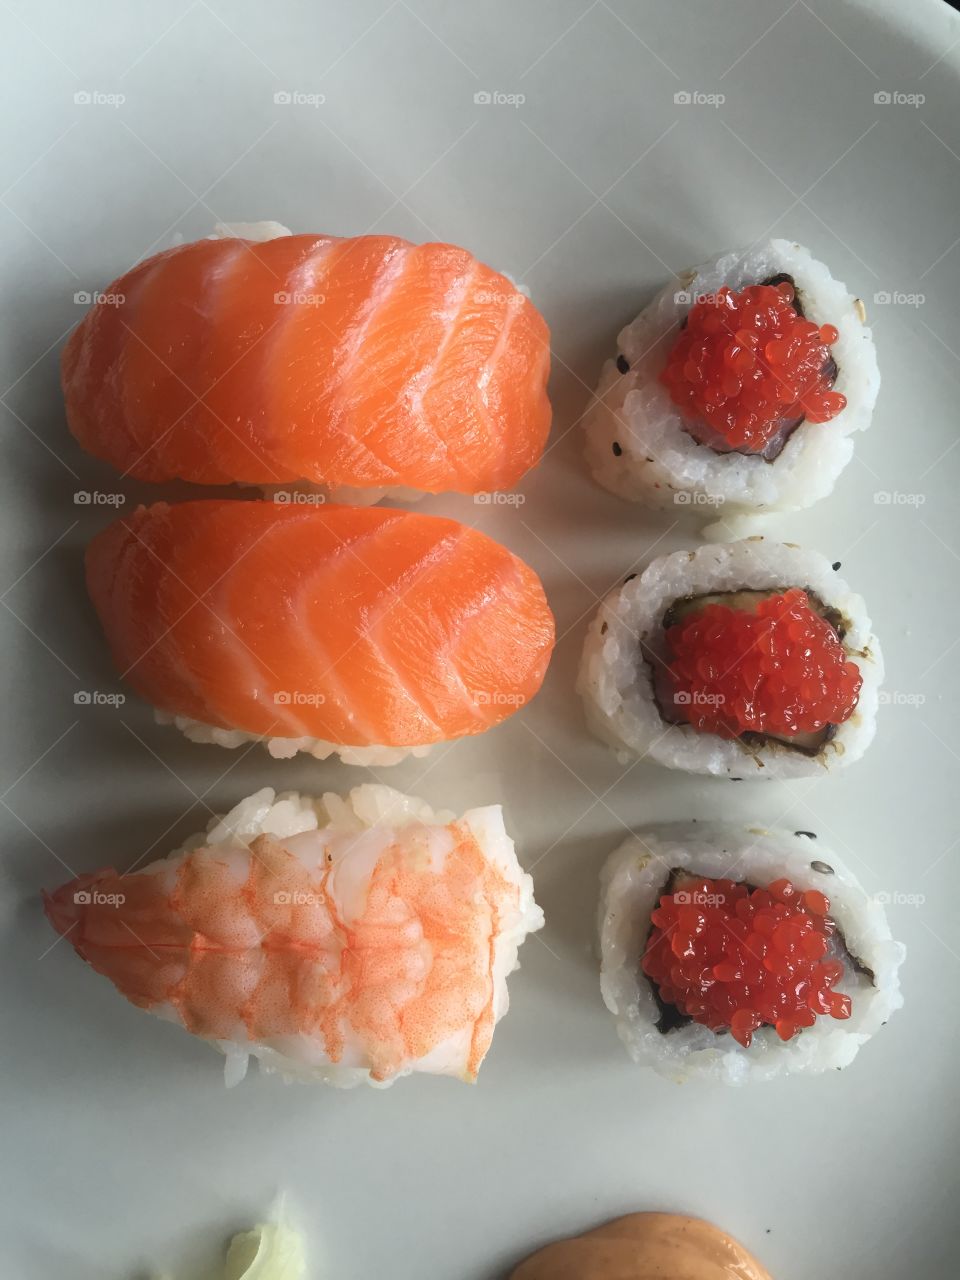 Sushi night